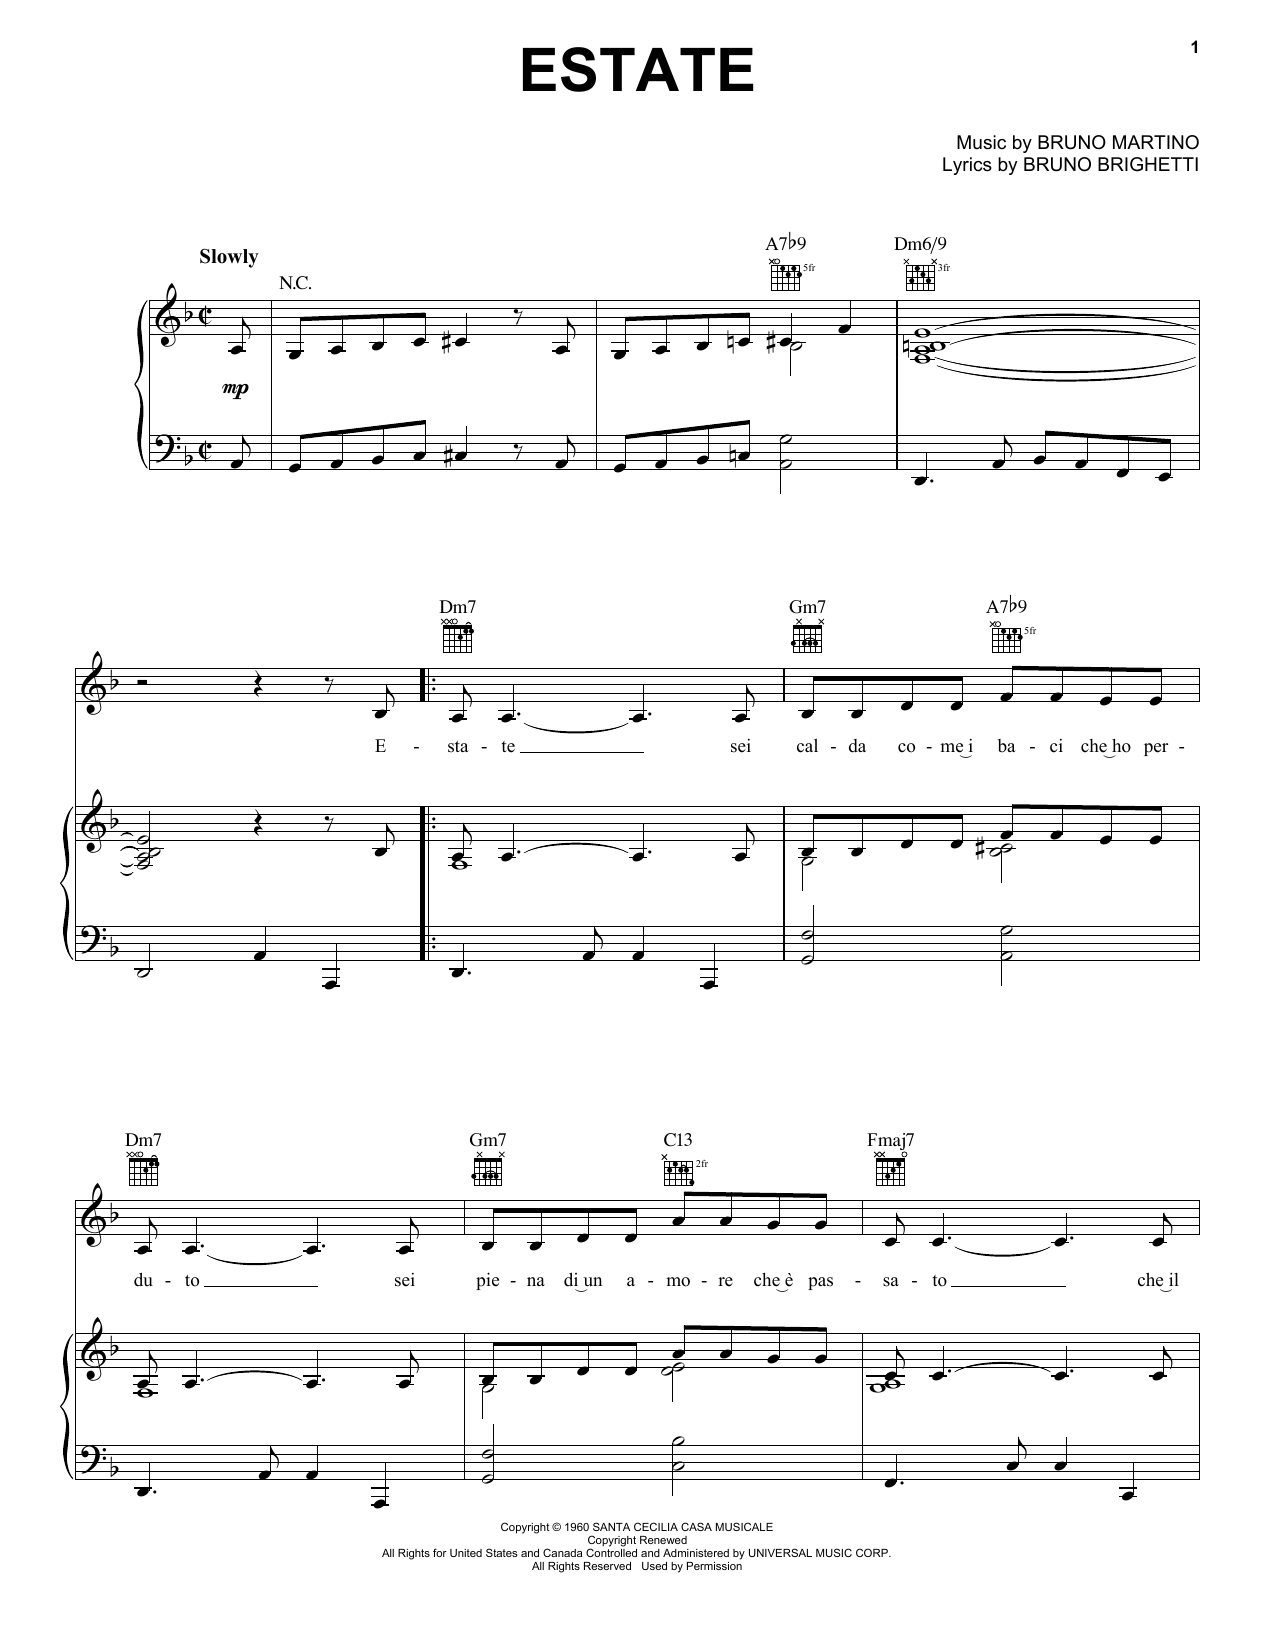 Bruno Martino Estate Sheet Music Notes & Chords for Lyrics & Chords - Download or Print PDF